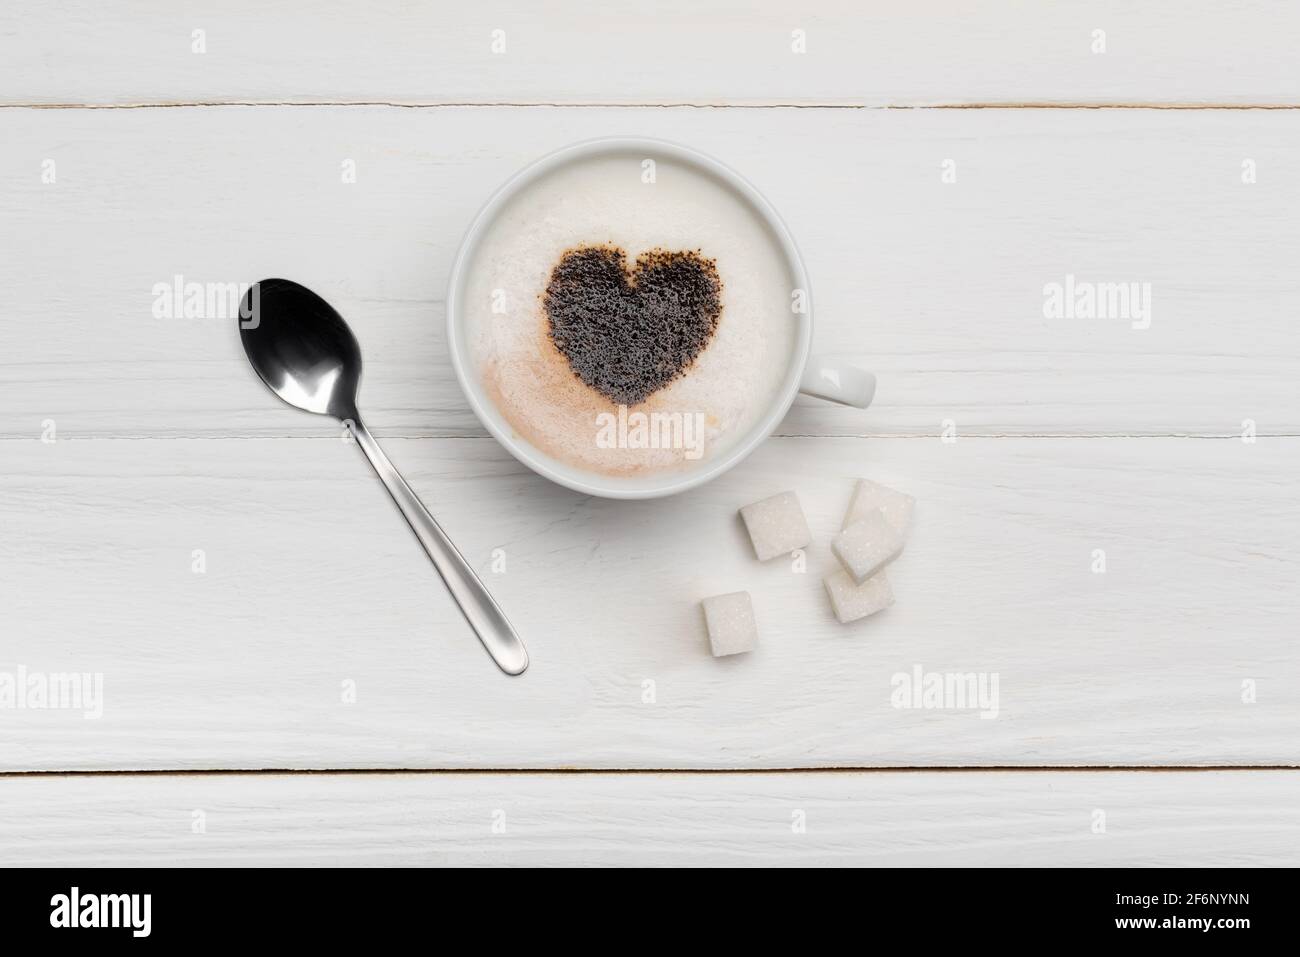 vista dall'alto della tazza con cappuccino vicino al cucchiaio e zucchero cubetti su sfondo bianco di legno Foto Stock